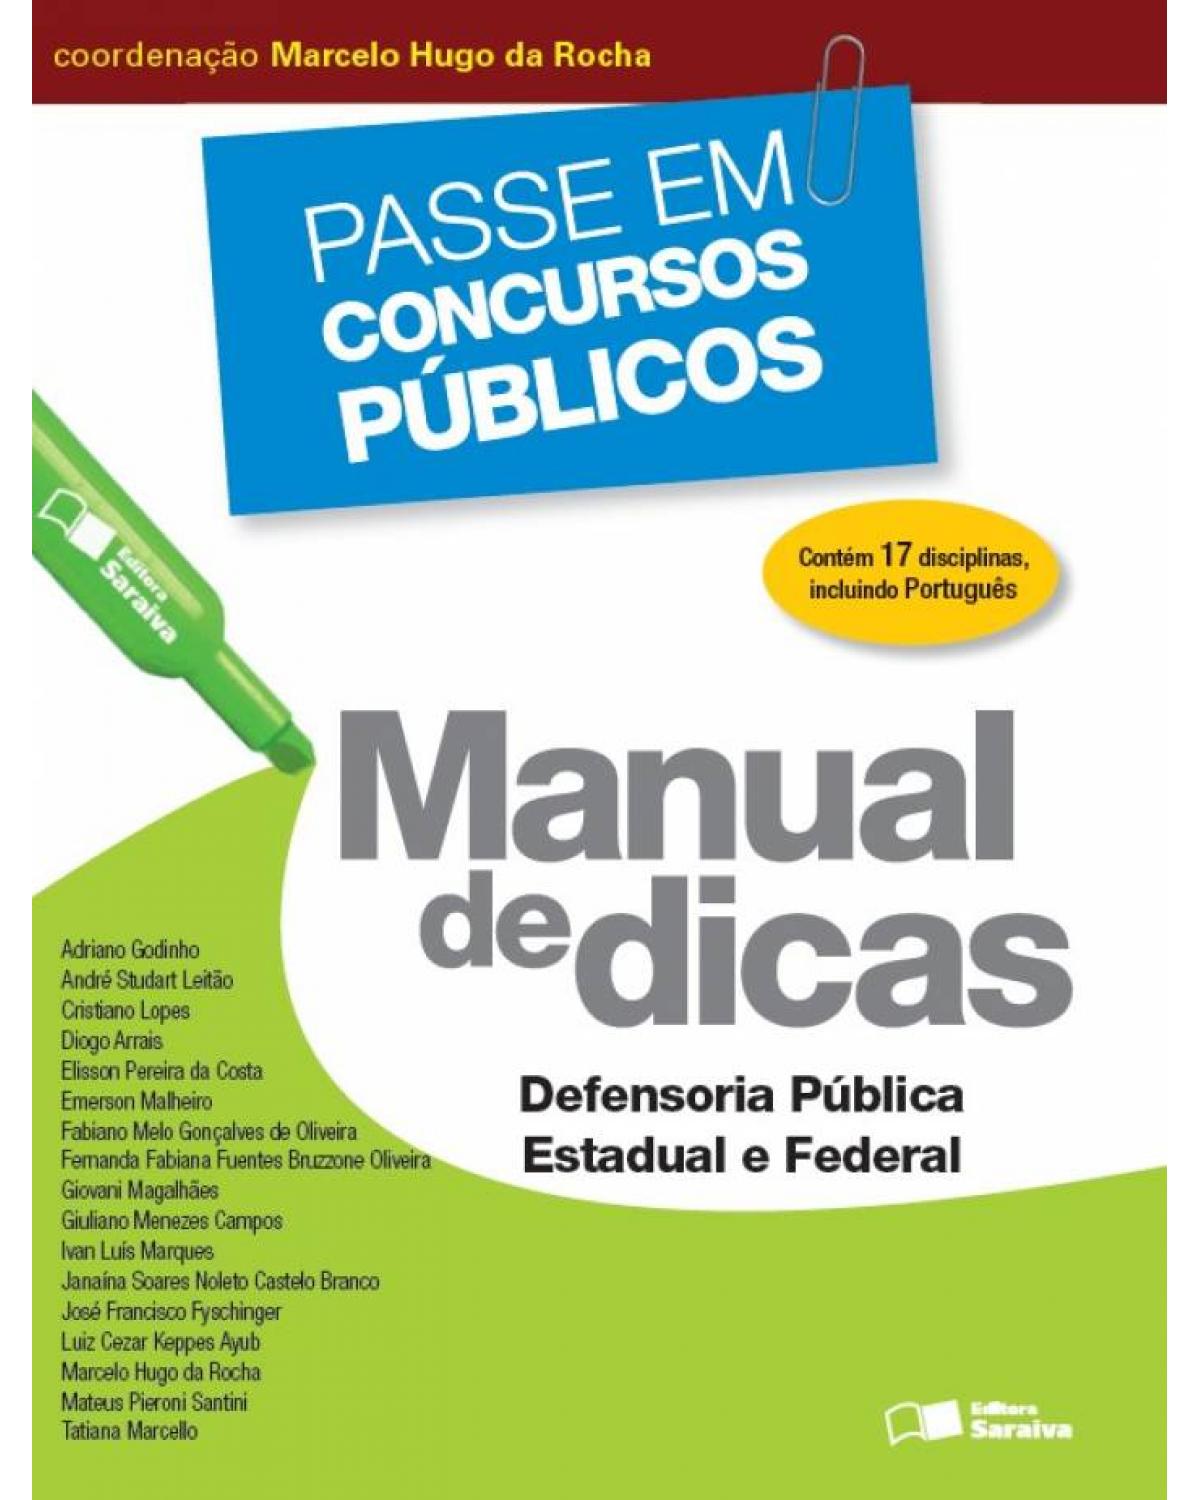 Manual de dicas - Defensoria Pública Estadual e Federal - 1ª Edição | 2013